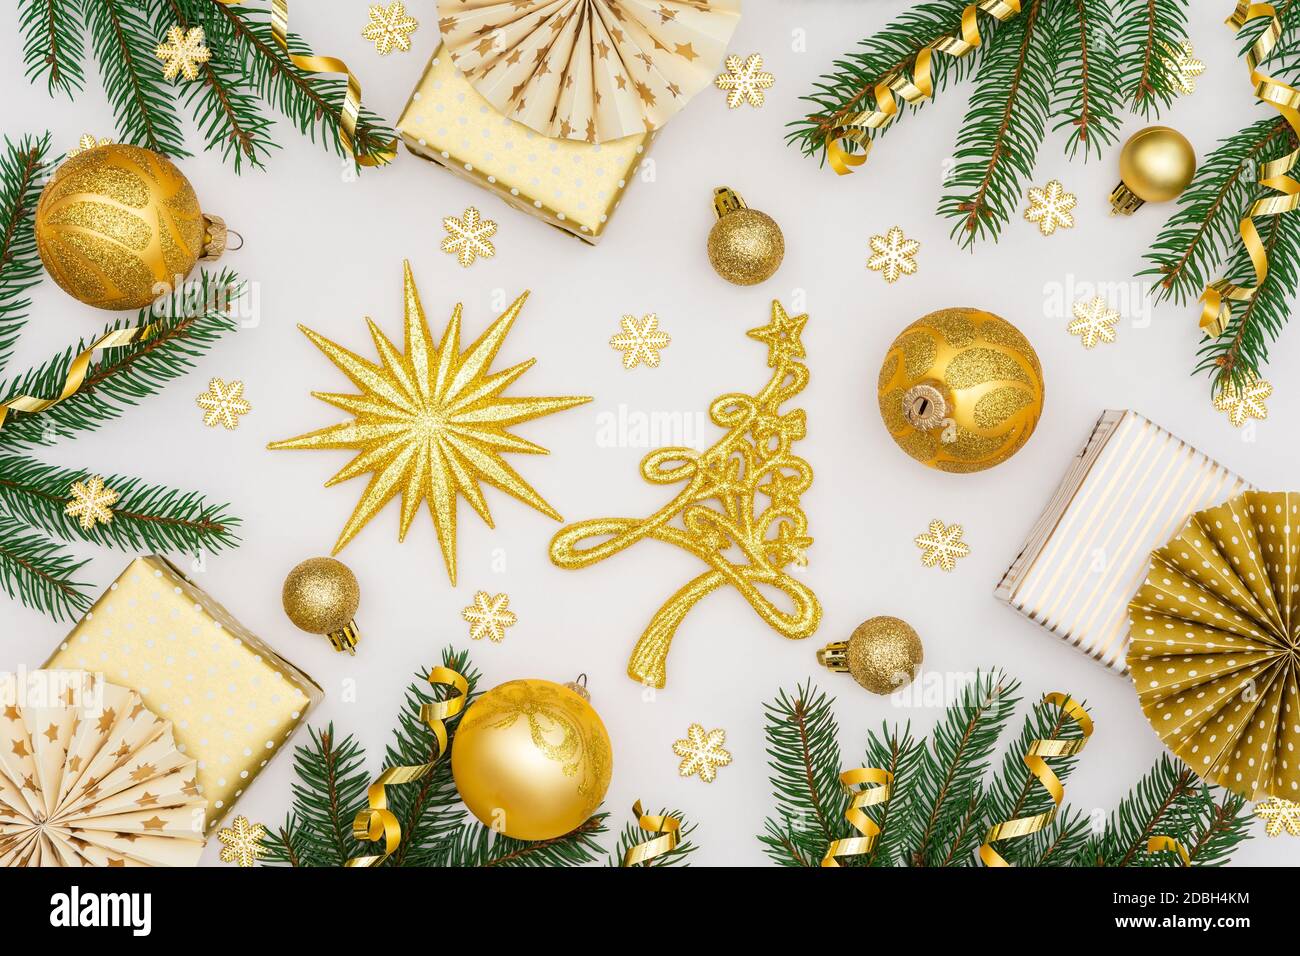 Fondo festivo con decoración de oro, cajas de regalo con confitería  serpentina de oro brillante y papel adornos de árbol de Navidad, brillantes  copos de nieve Fotografía de stock - Alamy